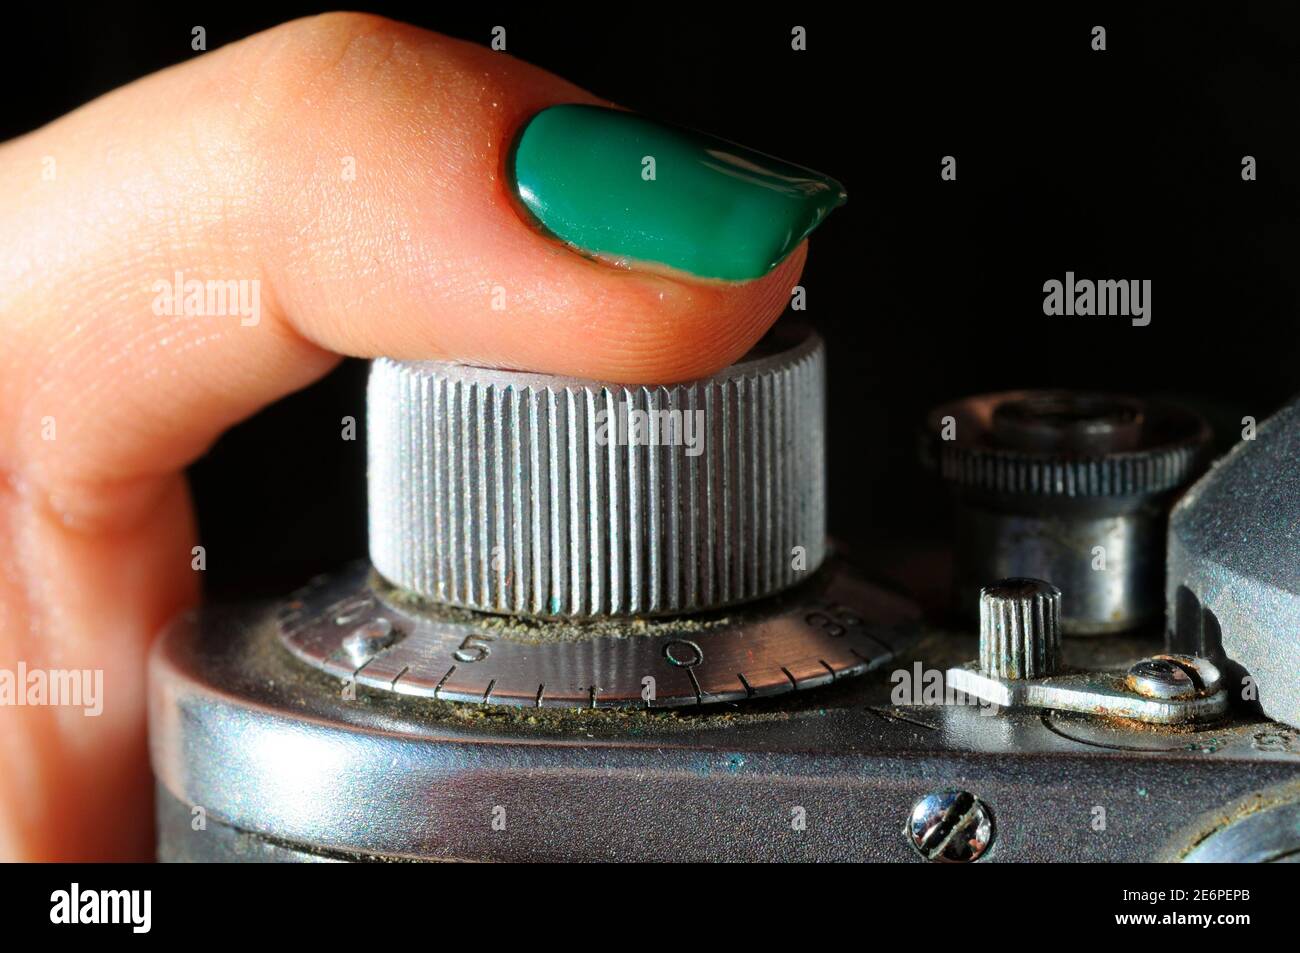 Femme doigt appuyant sur le bouton de déclenchement de l'obturateur d'un ancien appareil photo à film poussiéreux, gros plan Banque D'Images